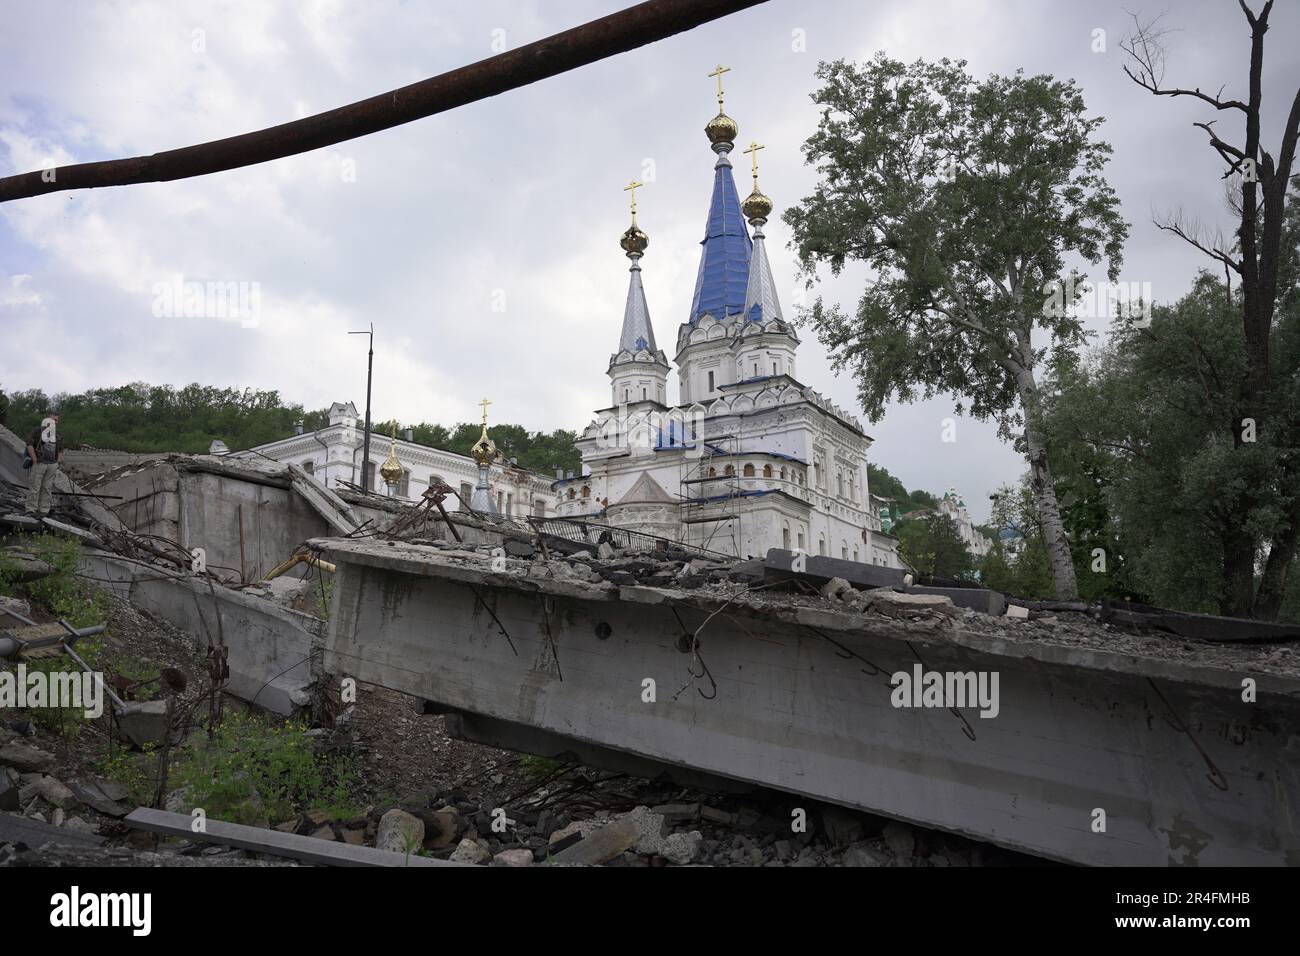 Die zerstörte Stadt Sviatohirsk in der Region UkraineÕs Donbass. Erst vor ein paar Monaten wurde es von russischen Truppen besetzt. Die UkraineÕs-Armee befreite die Stadt, aber die Narben des Krieges sind noch da. Stockfoto